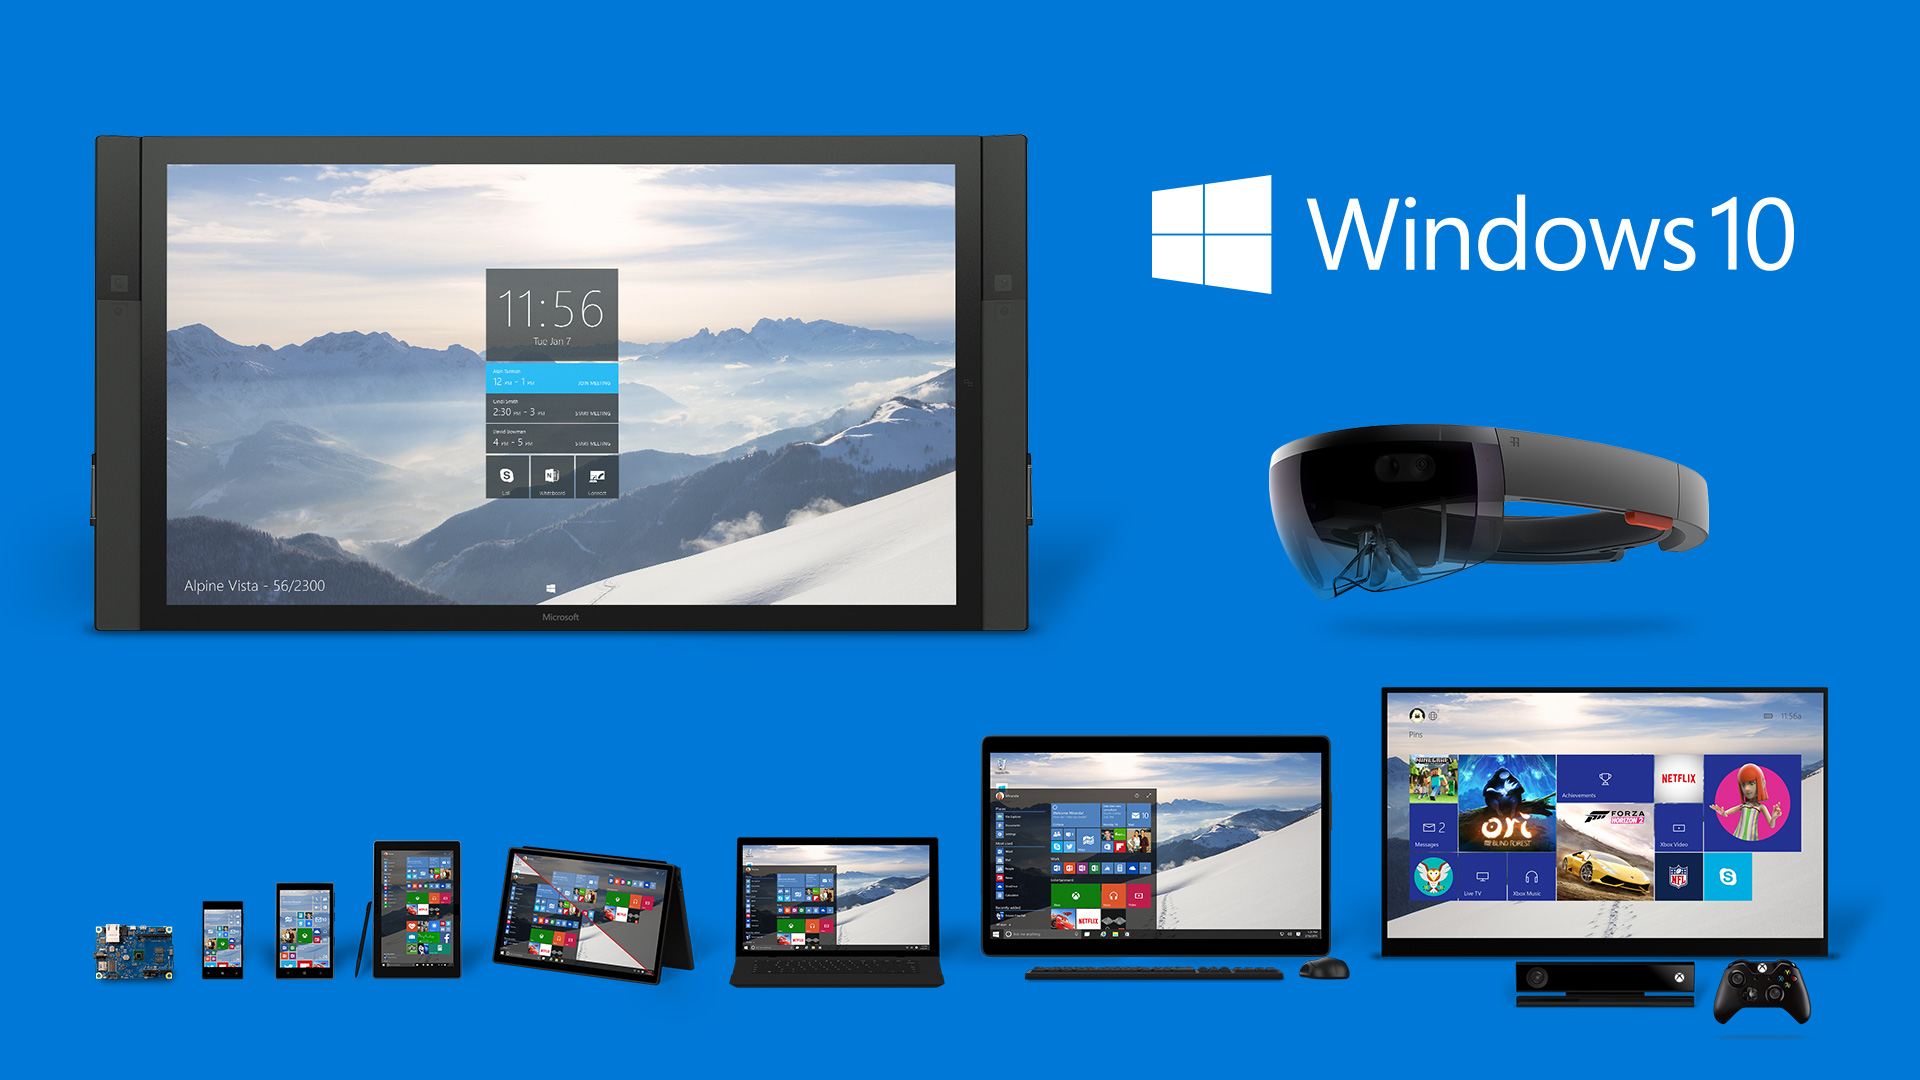 Windows 10 triunfa en todos los formatos